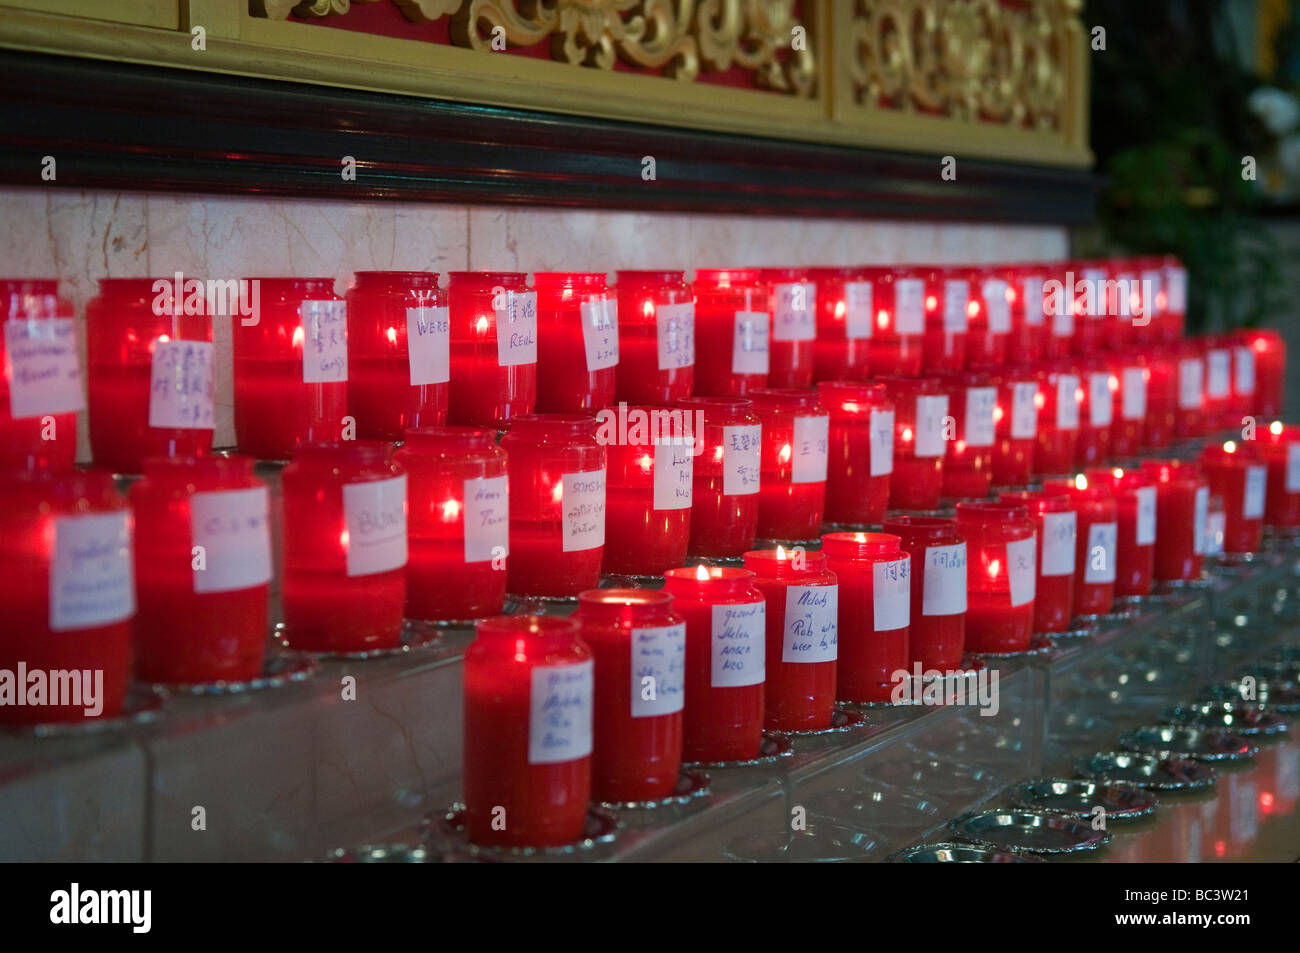 Bougies brûlantes à l'autel du temple bouddhiste chinois, FO Guang Shan He Hua (temple Zeedijk), Amsterdam, pays-Bas Banque D'Images